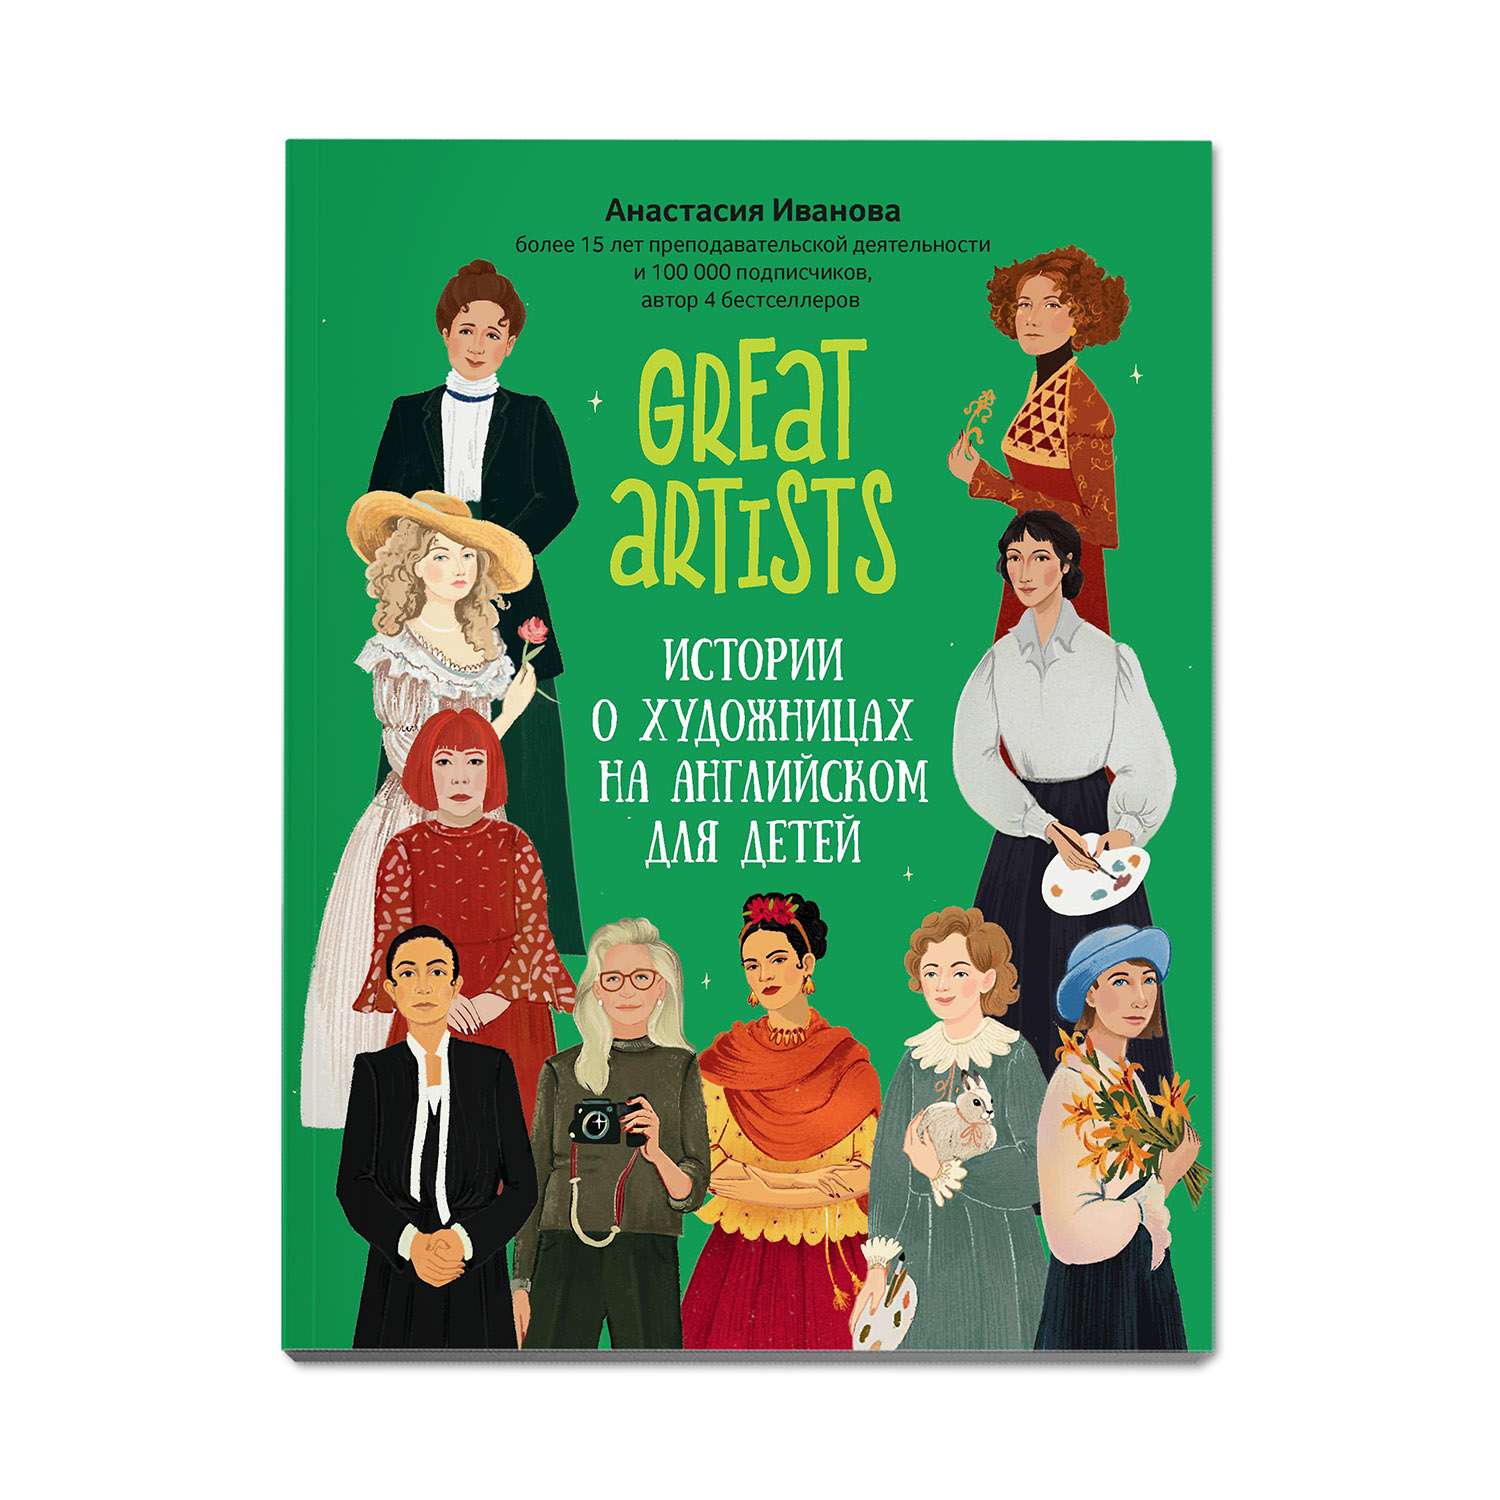 Книга Феникс Great artists: истории о художницах на английском для детей - фото 1